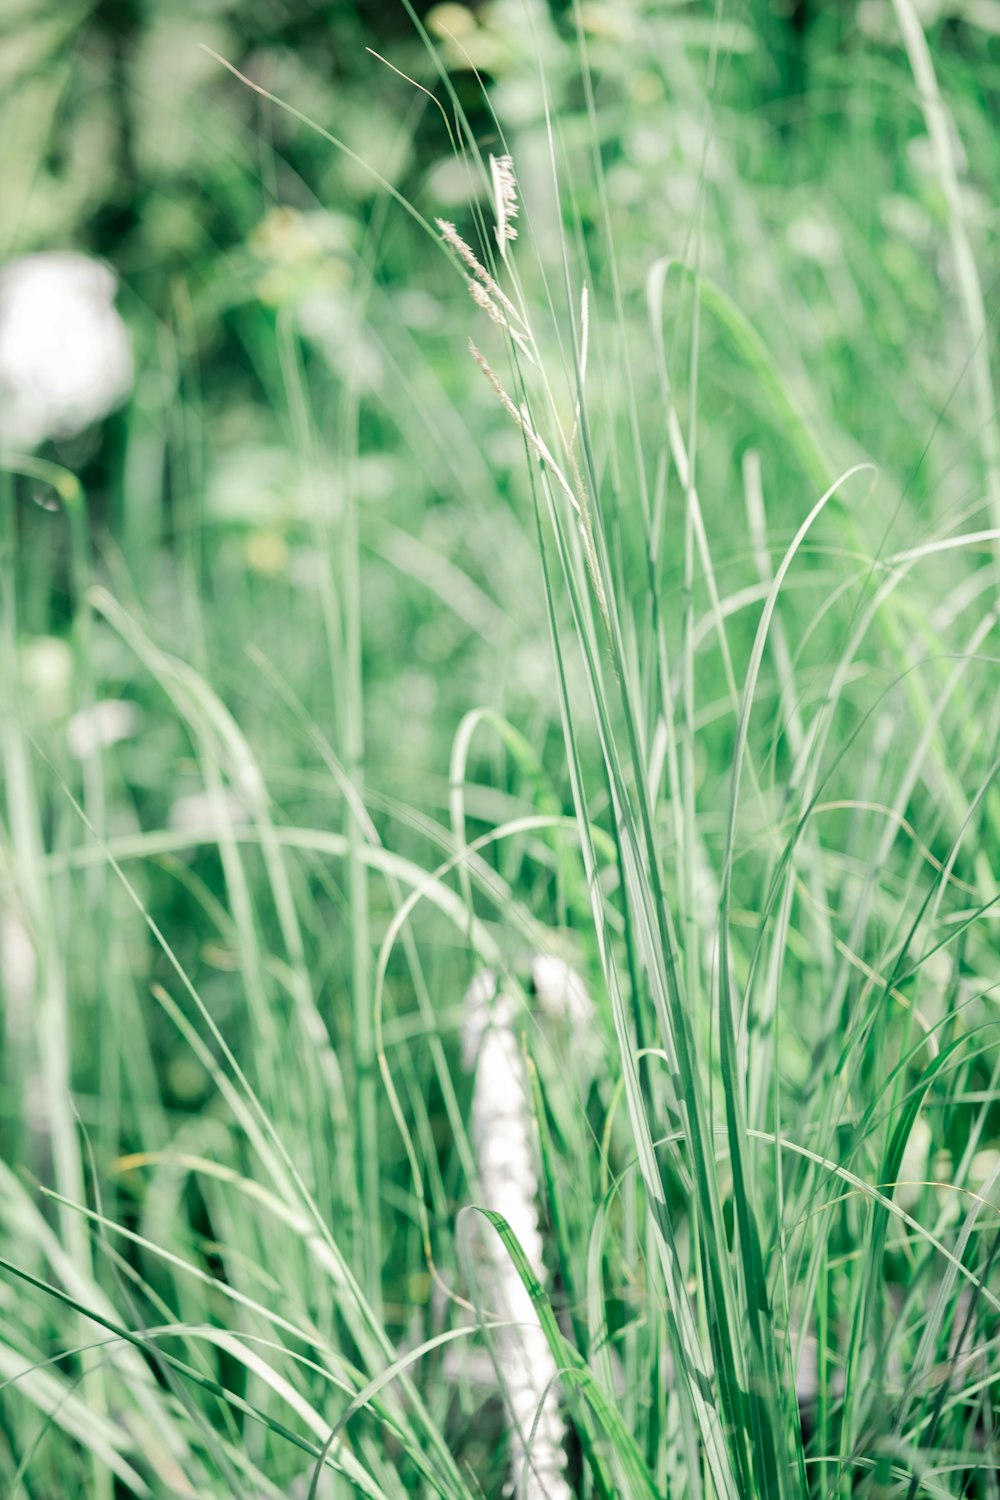 close-up of a grass field